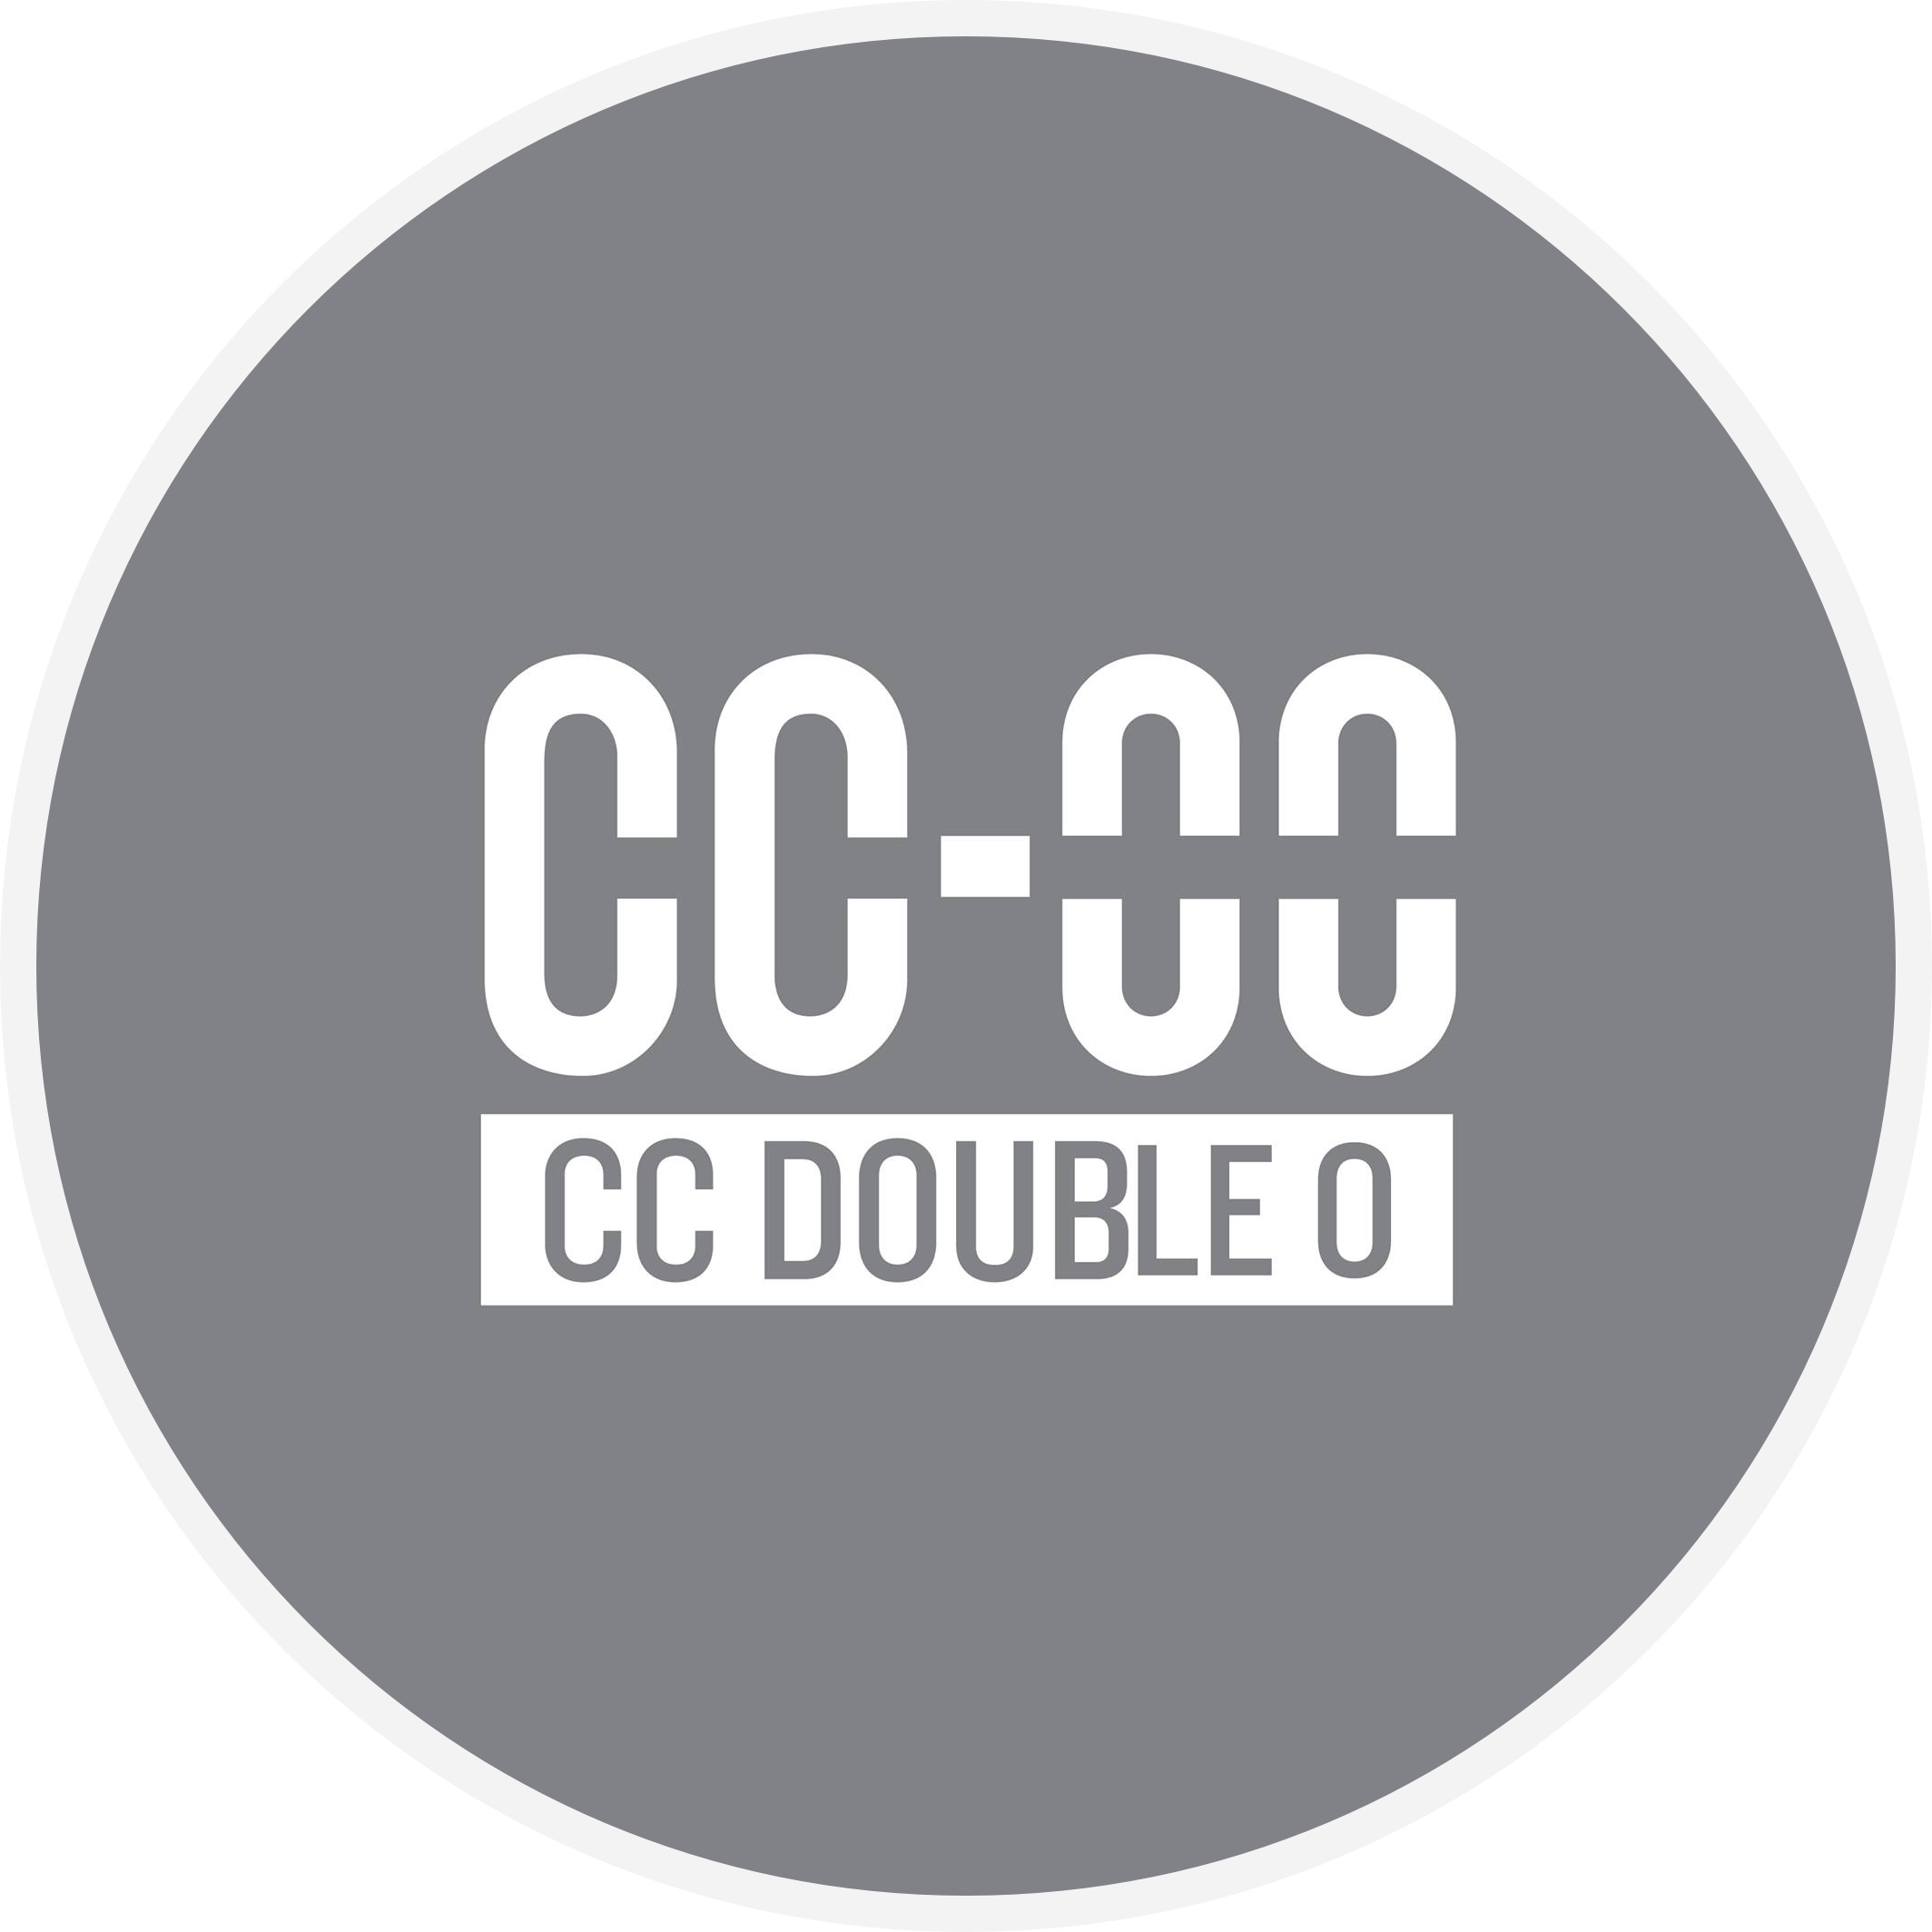 CC-OO CC DOUBLE O